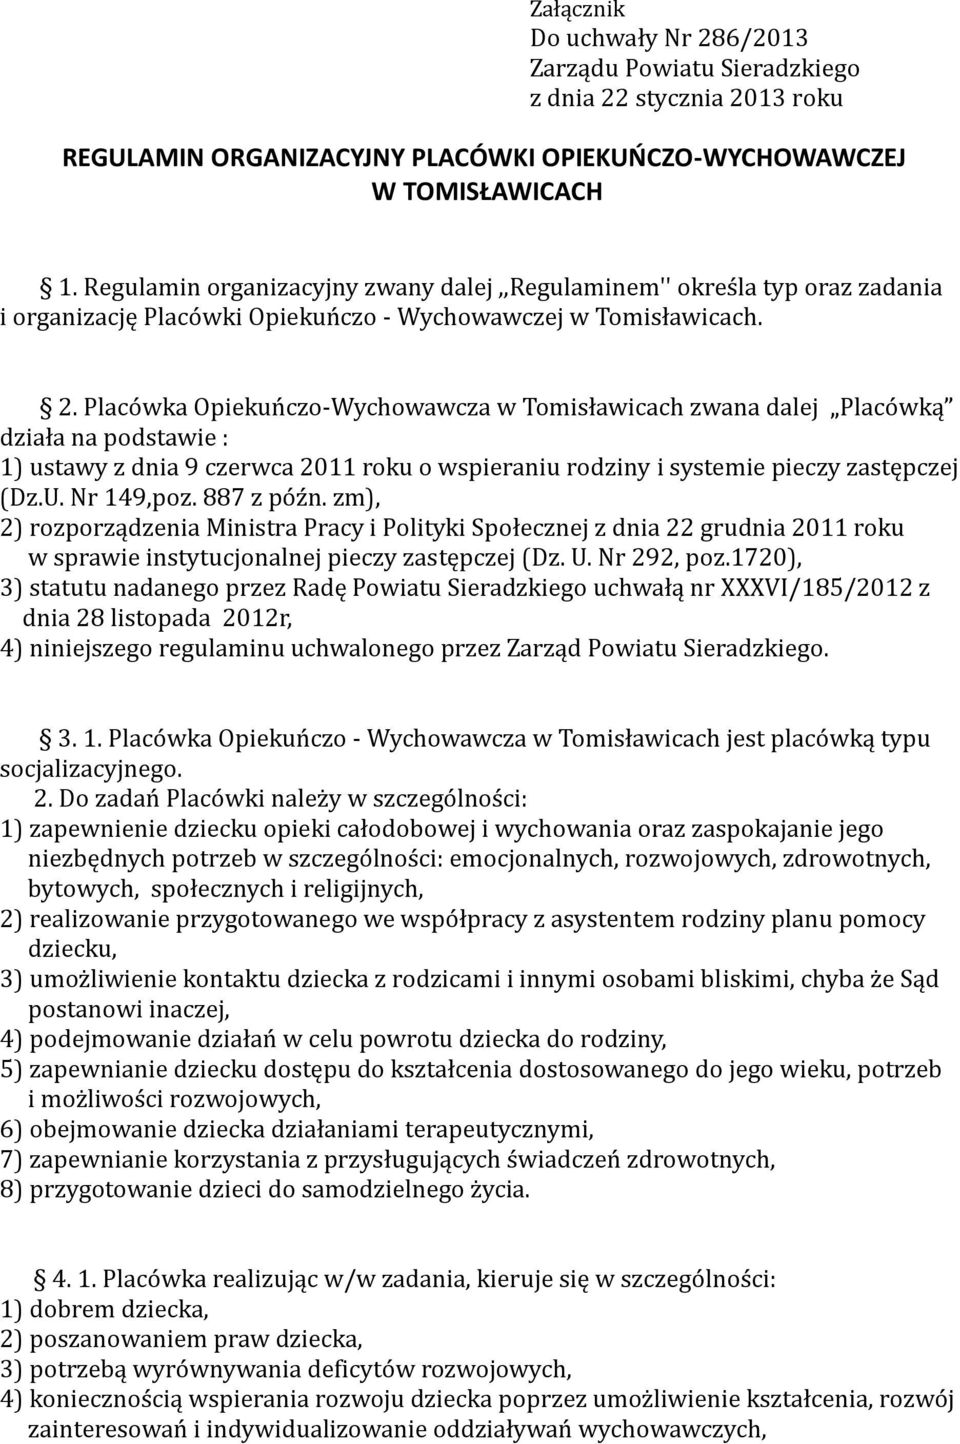 Placówka Opiekuńczo-Wychowawcza w Tomisławicach zwana dalej Placówką działa na podstawie : 1) ustawy z dnia 9 czerwca 2011 roku o wspieraniu rodziny i systemie pieczy zastępczej (Dz.U. Nr 149,poz.